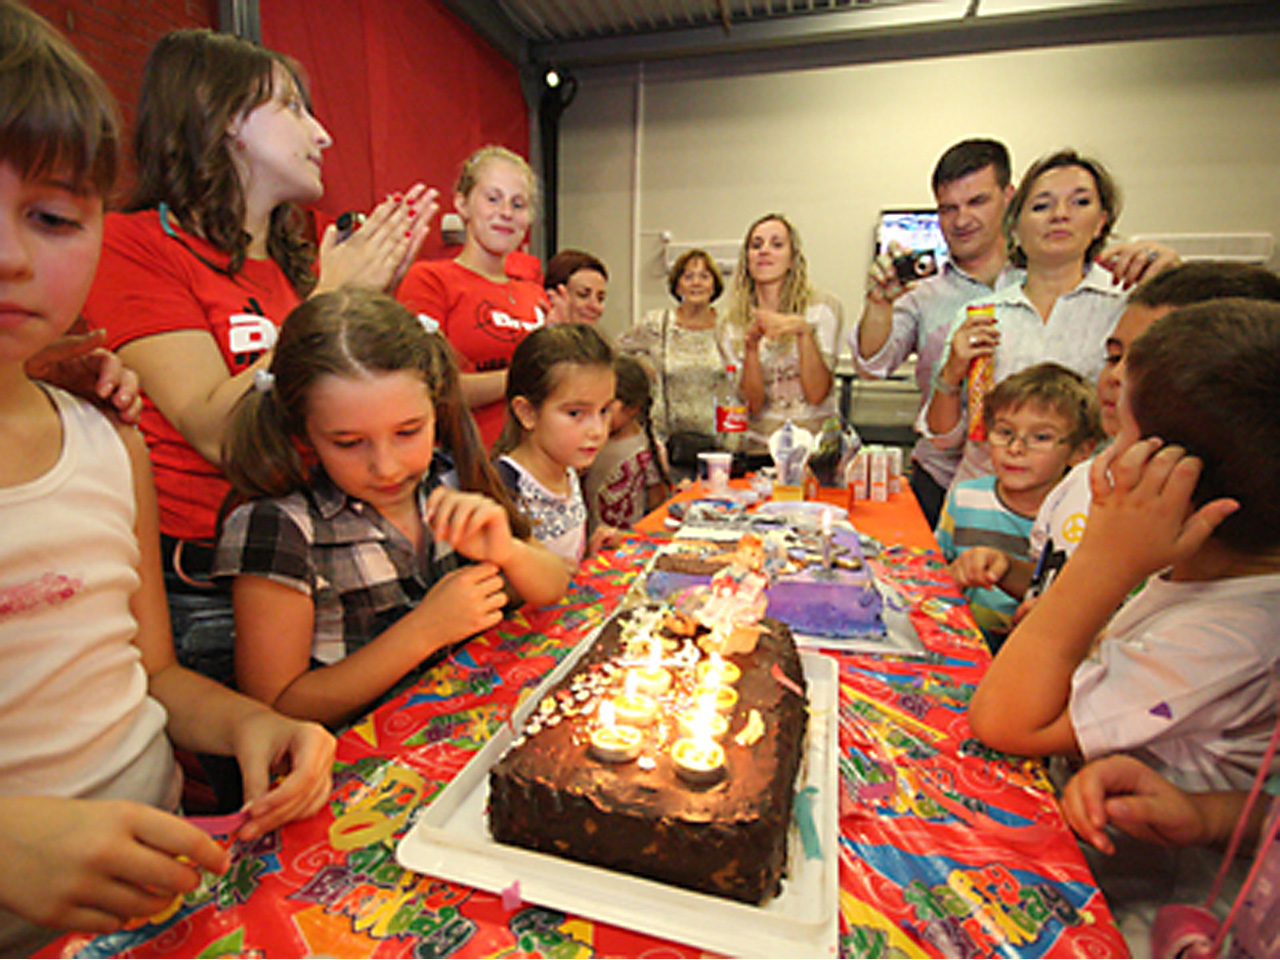 ARENA SPORTS CLUB NO 1 Proslava dečijih rođendana, rođendaonice Beograd